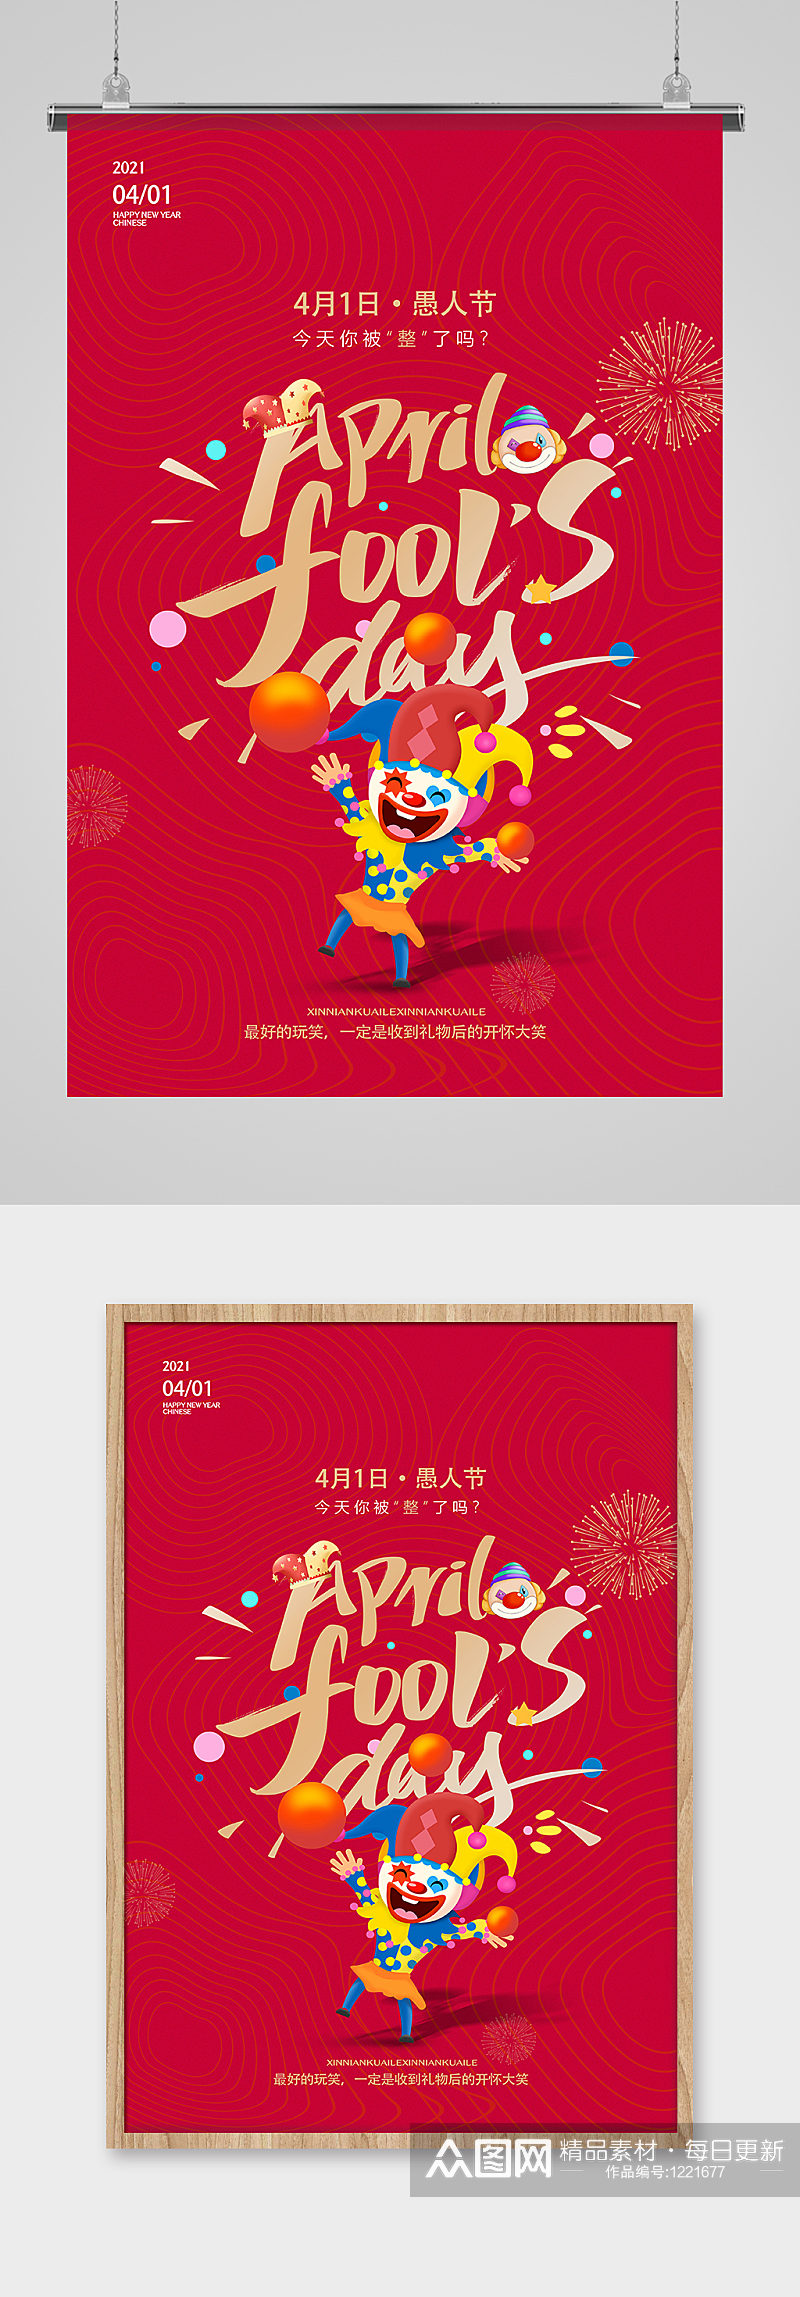 欢乐小丑4月1日愚人节海报设计素材